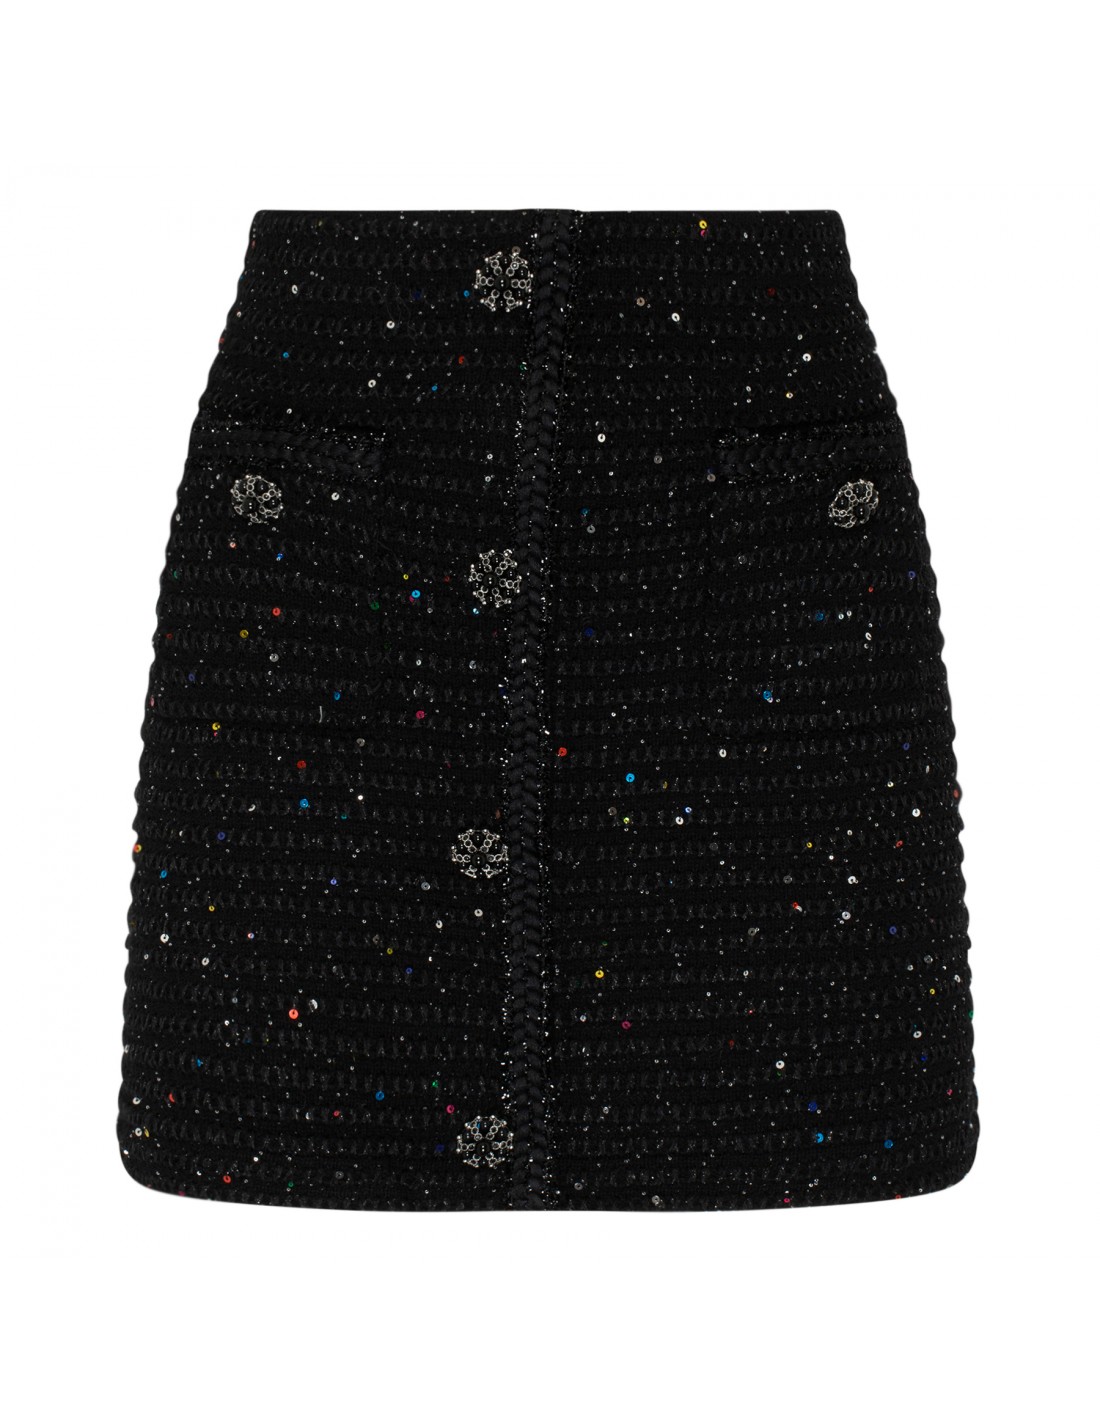 Black sequin knit skirt